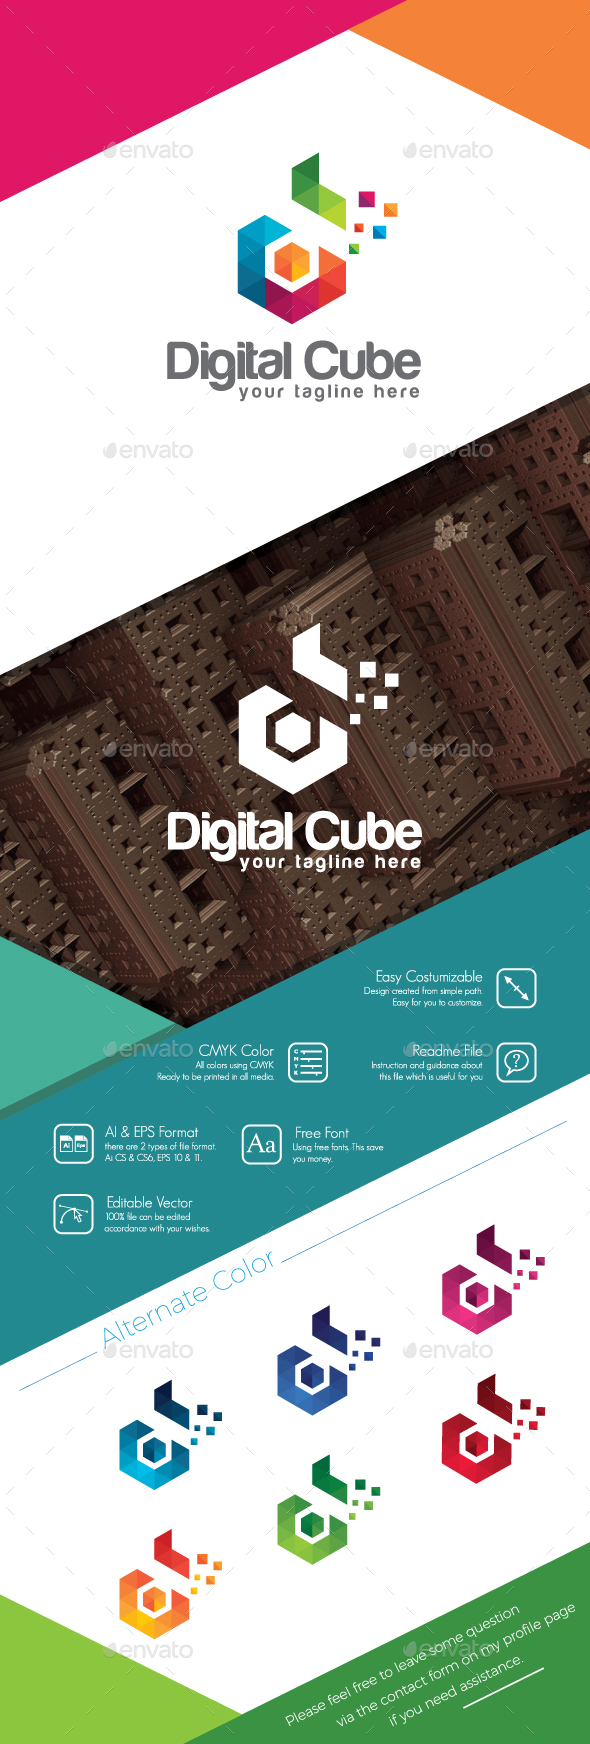 Digital Cube - Colorful Letter D Logo V2